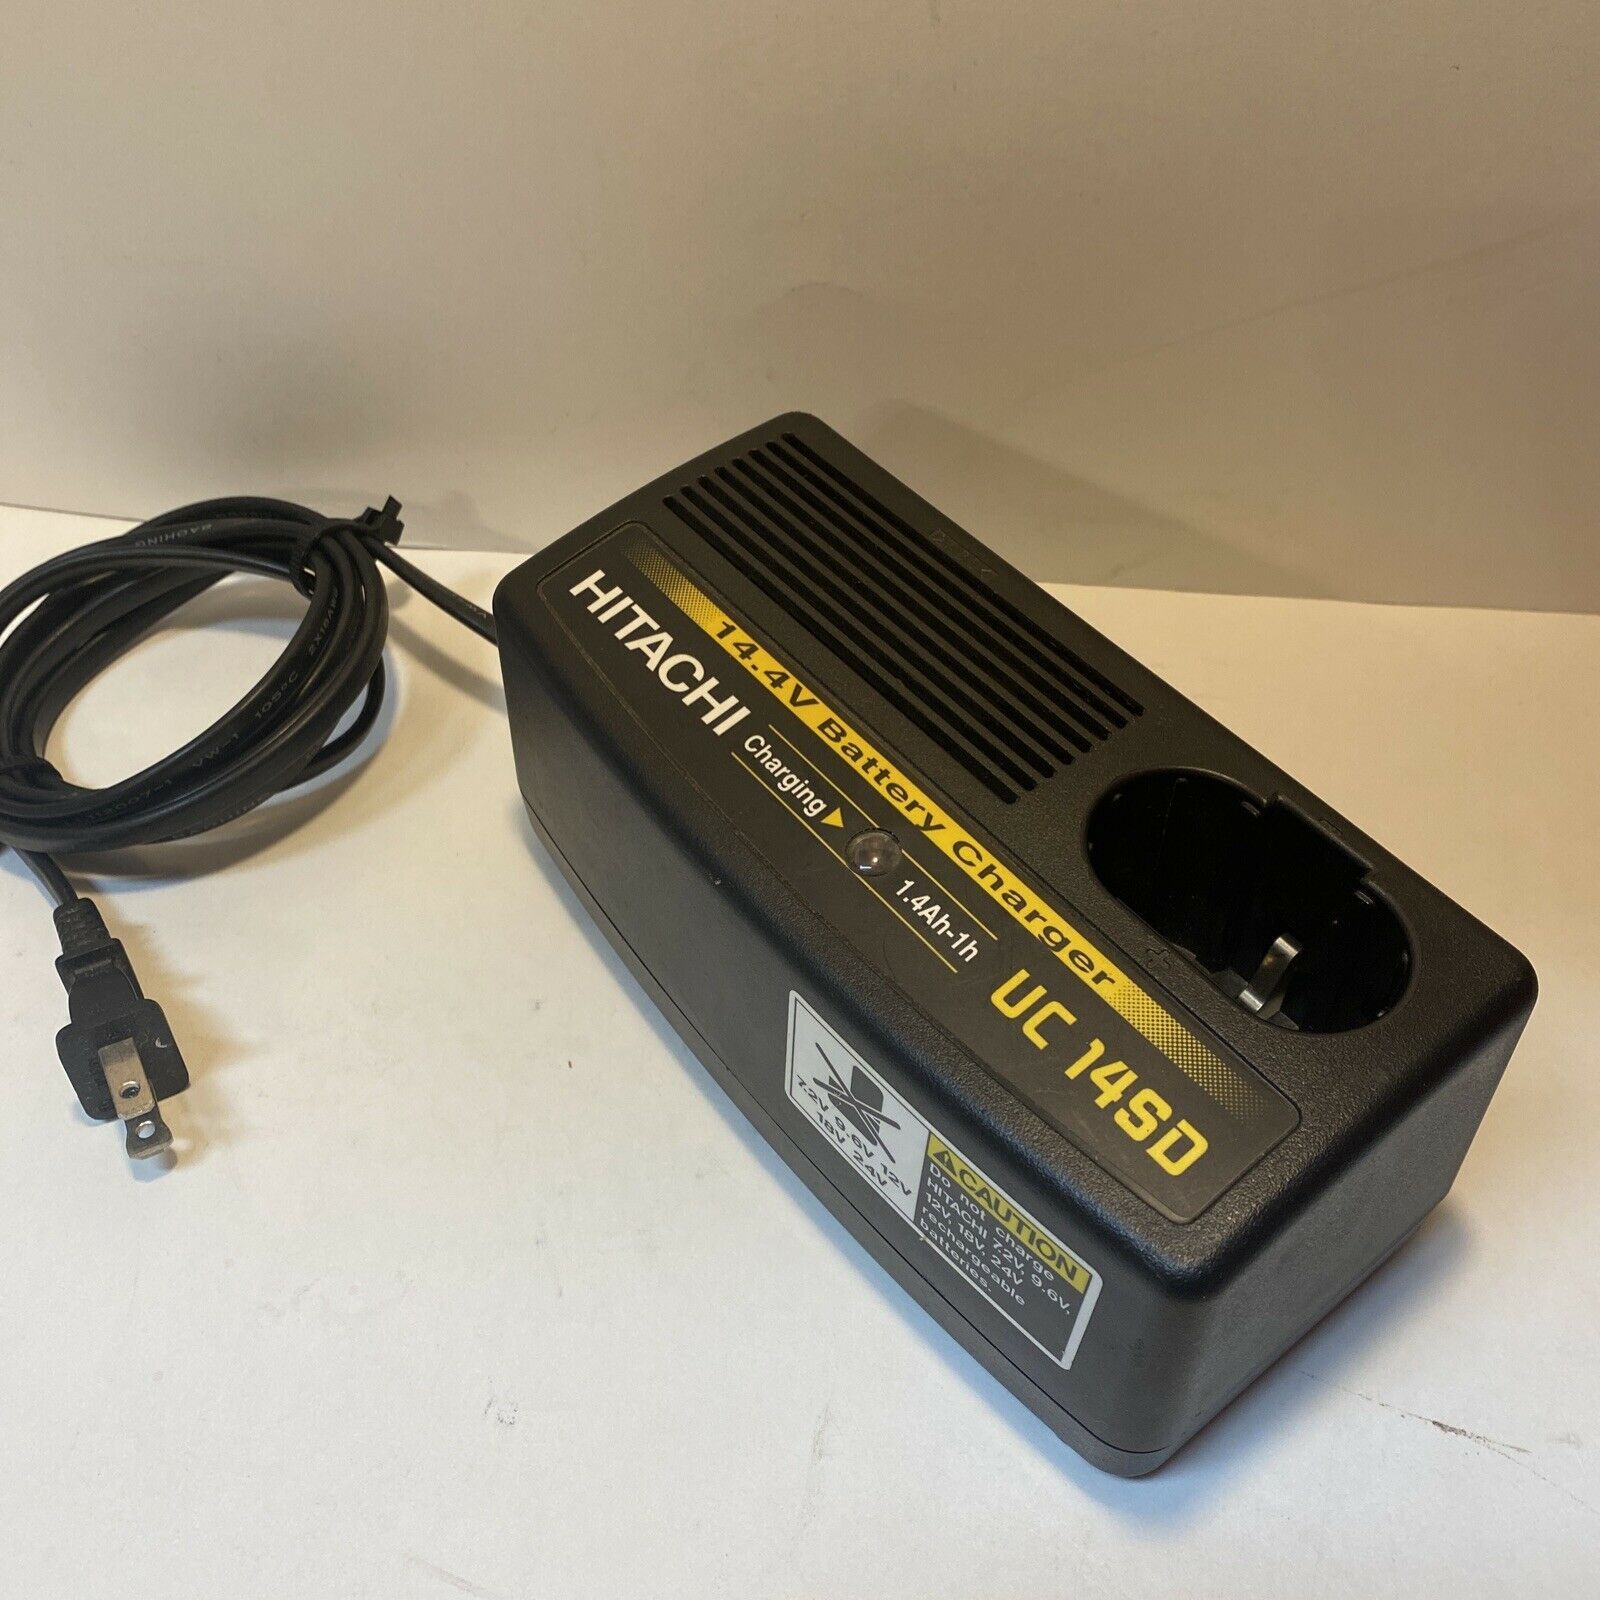 Black & Decker 15.6V NiCad Rechargeable Battery Rebuild Kit